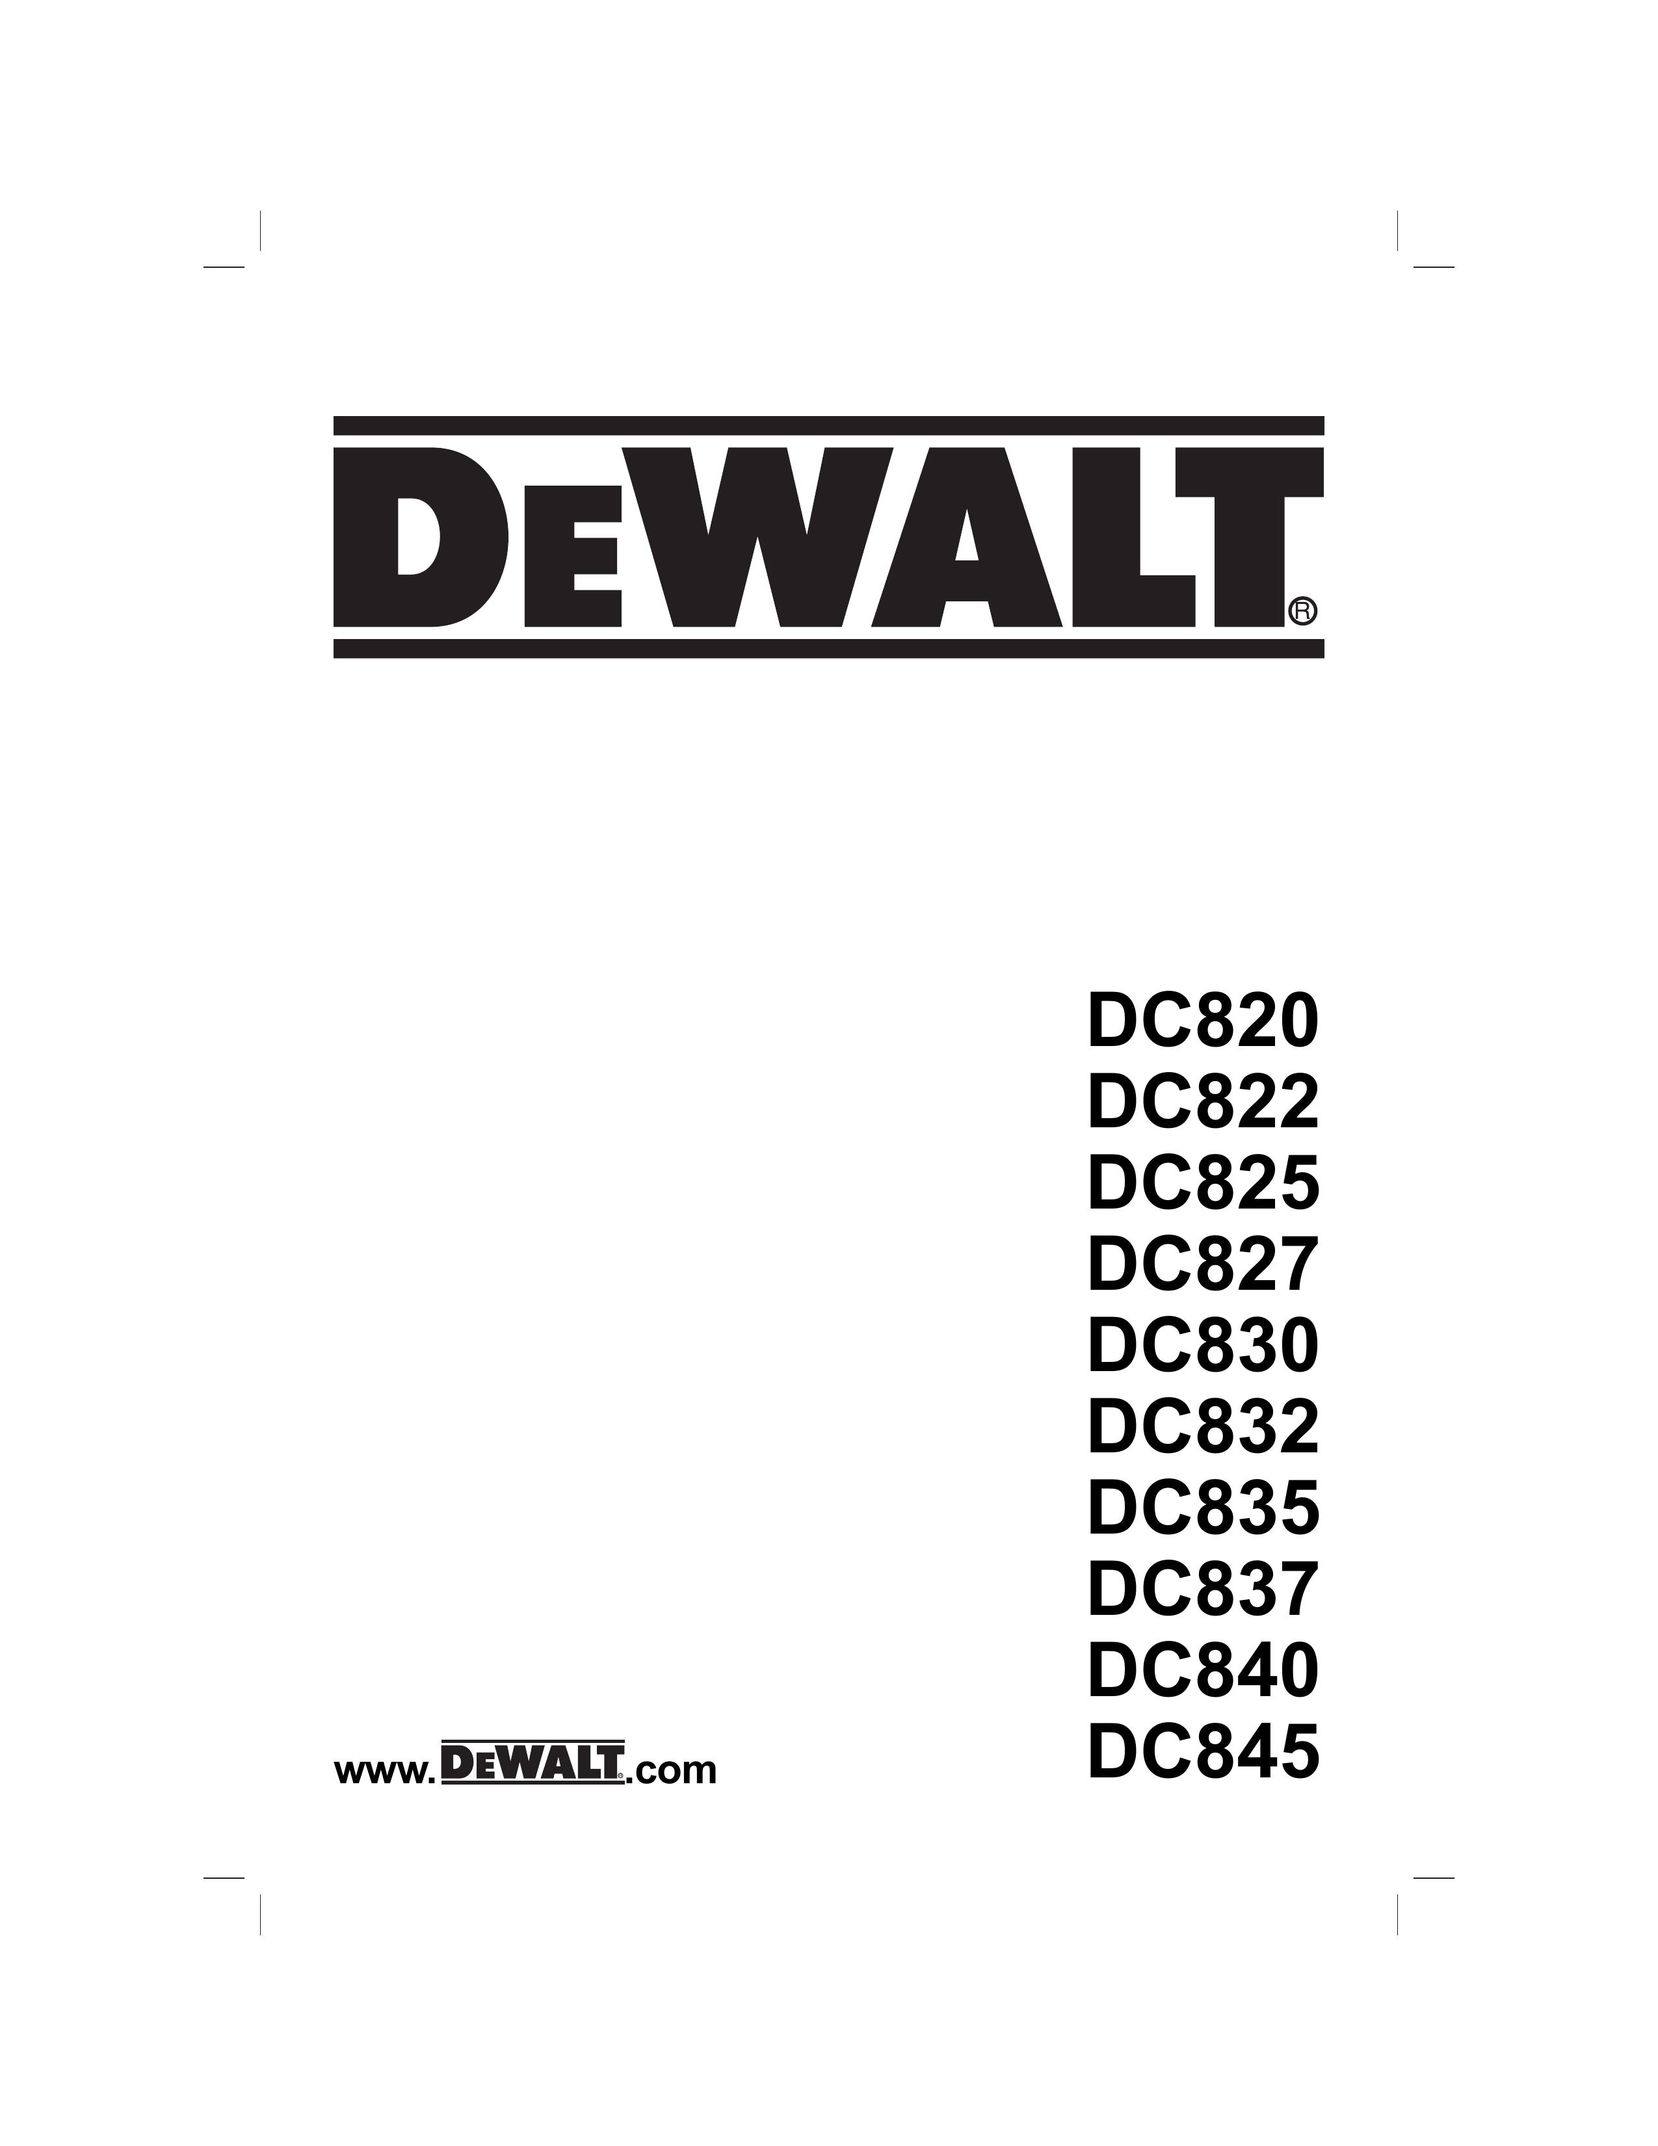 DeWalt DC825B Cordless Drill User Manual